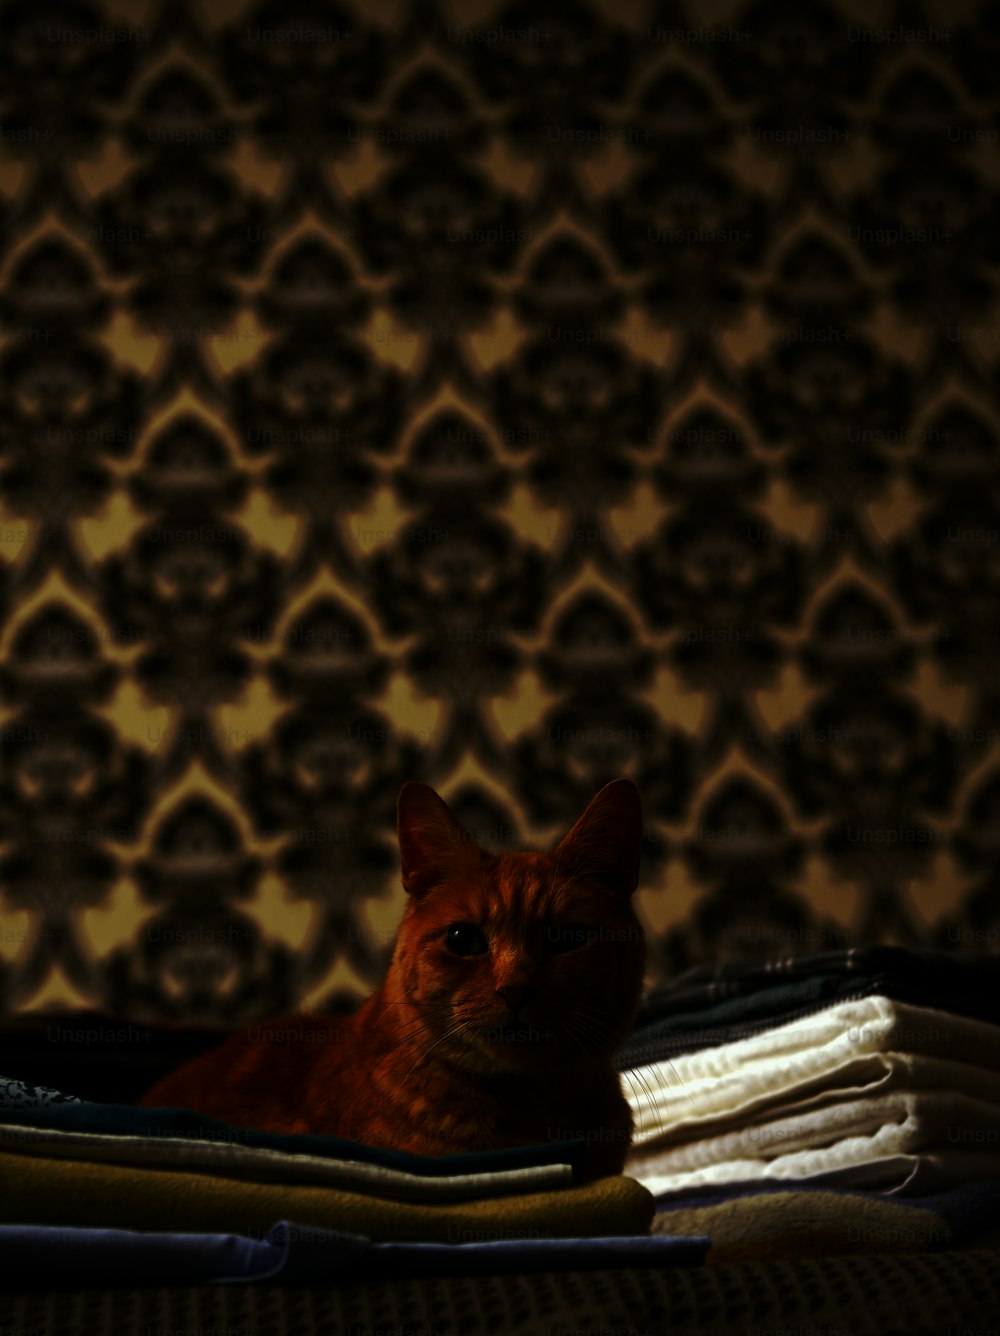 접힌 옷 더미 위에 누워 있는 �주황색 고양이